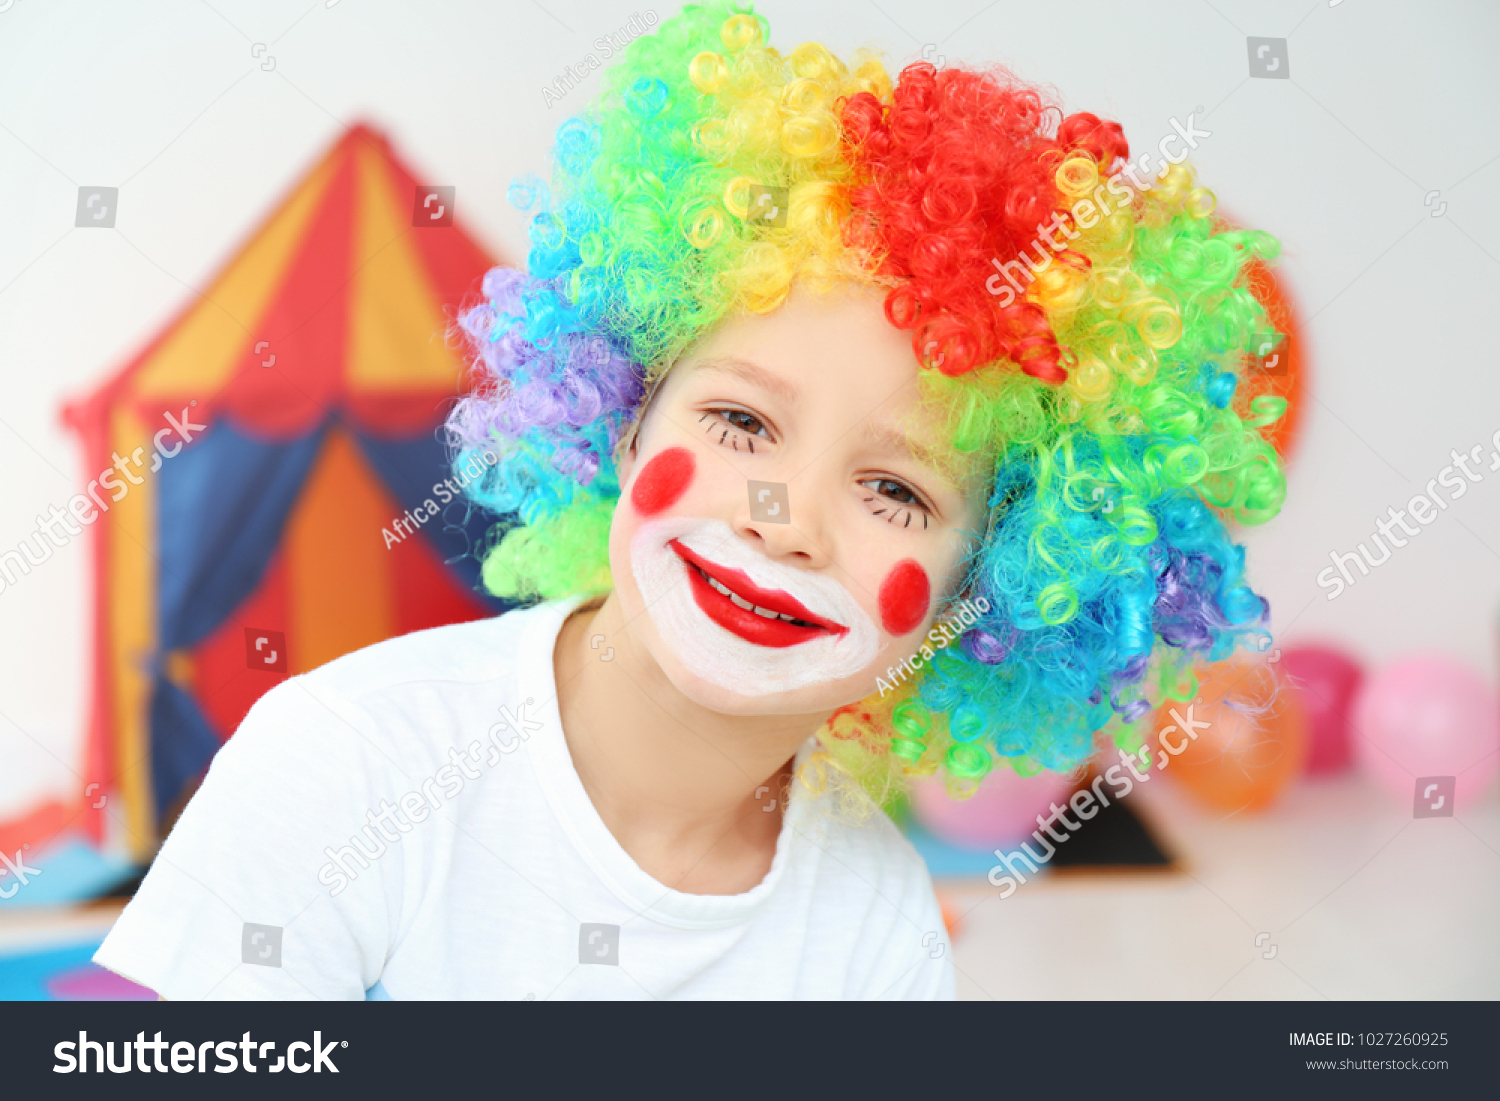 Clown Makeup Boy